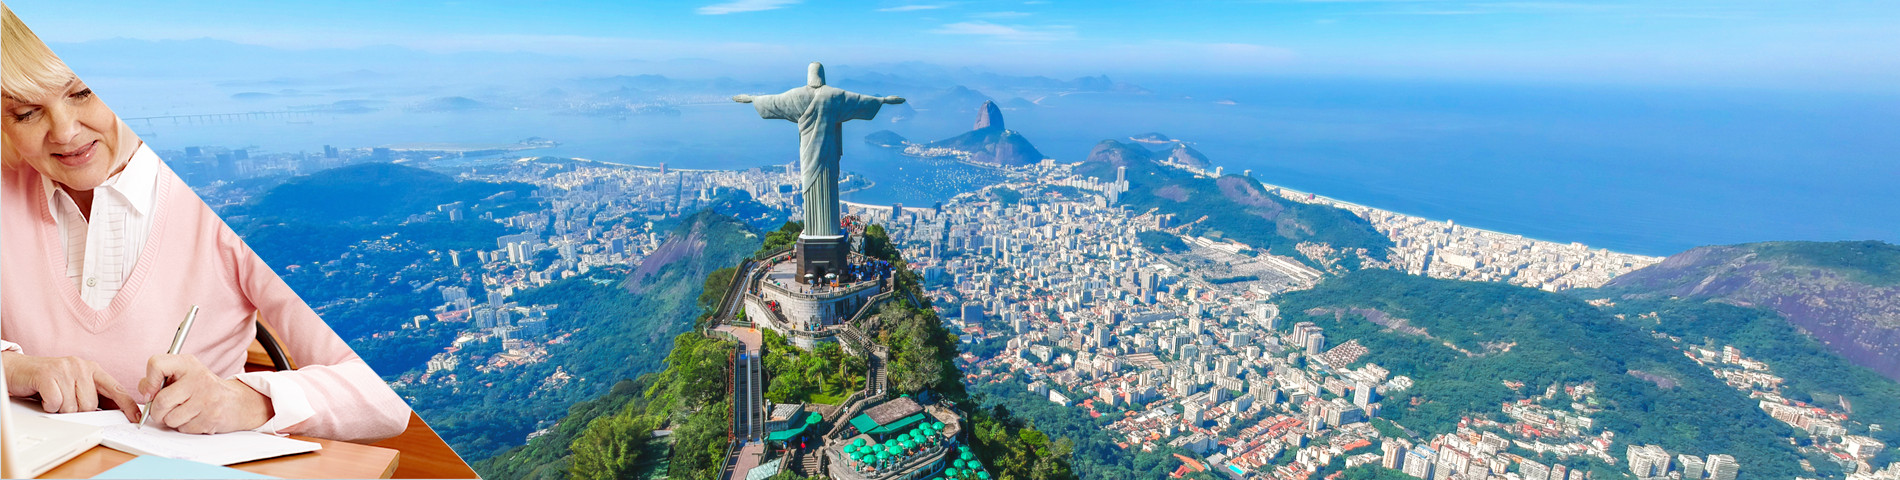 ประเทศบราซิล - หลักสูตรสำหรับผู้สูงอายุ (50 ปีขึ้นไป)